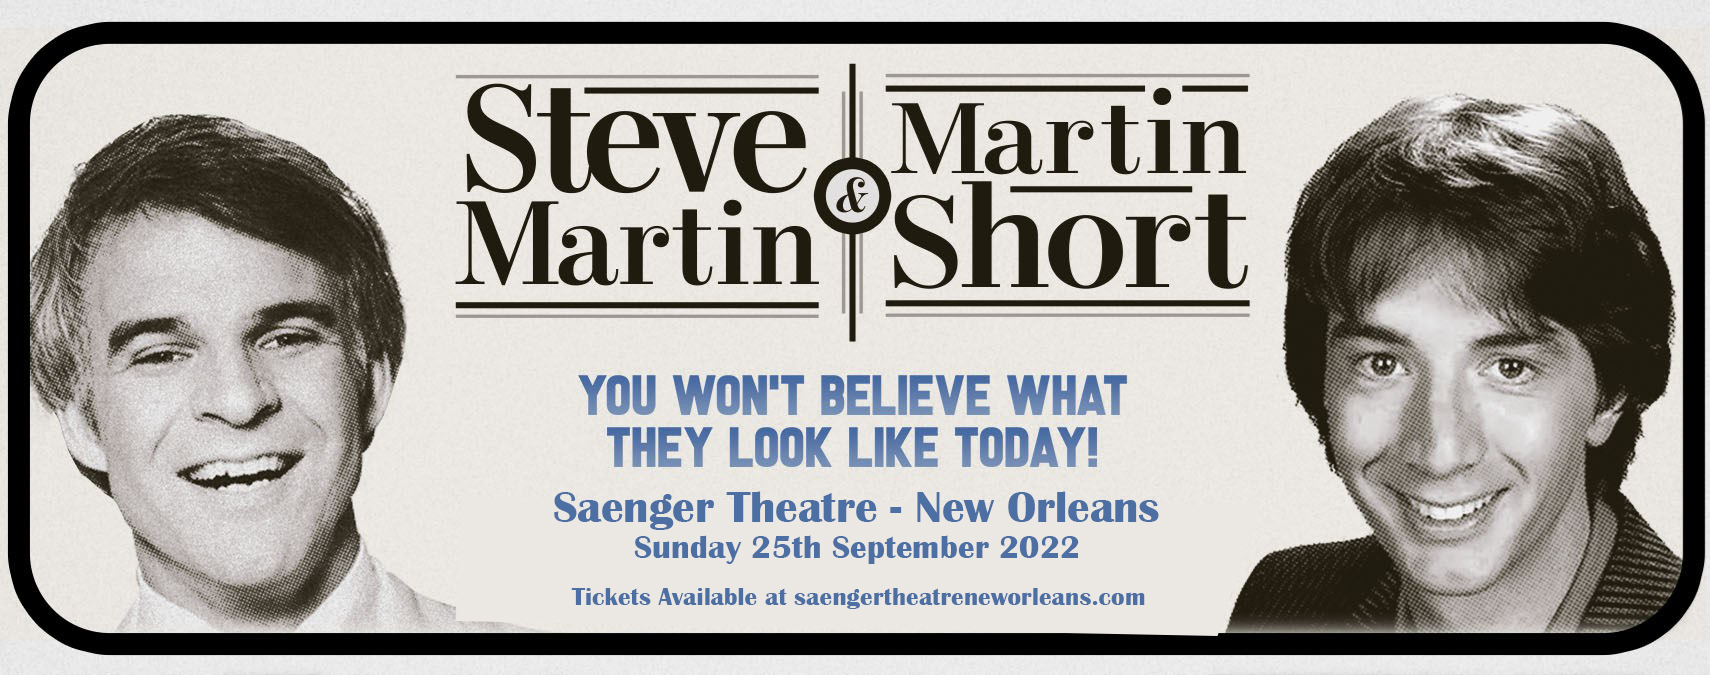 Steve Martin & Martin Short at Saenger Theatre - New Orleans